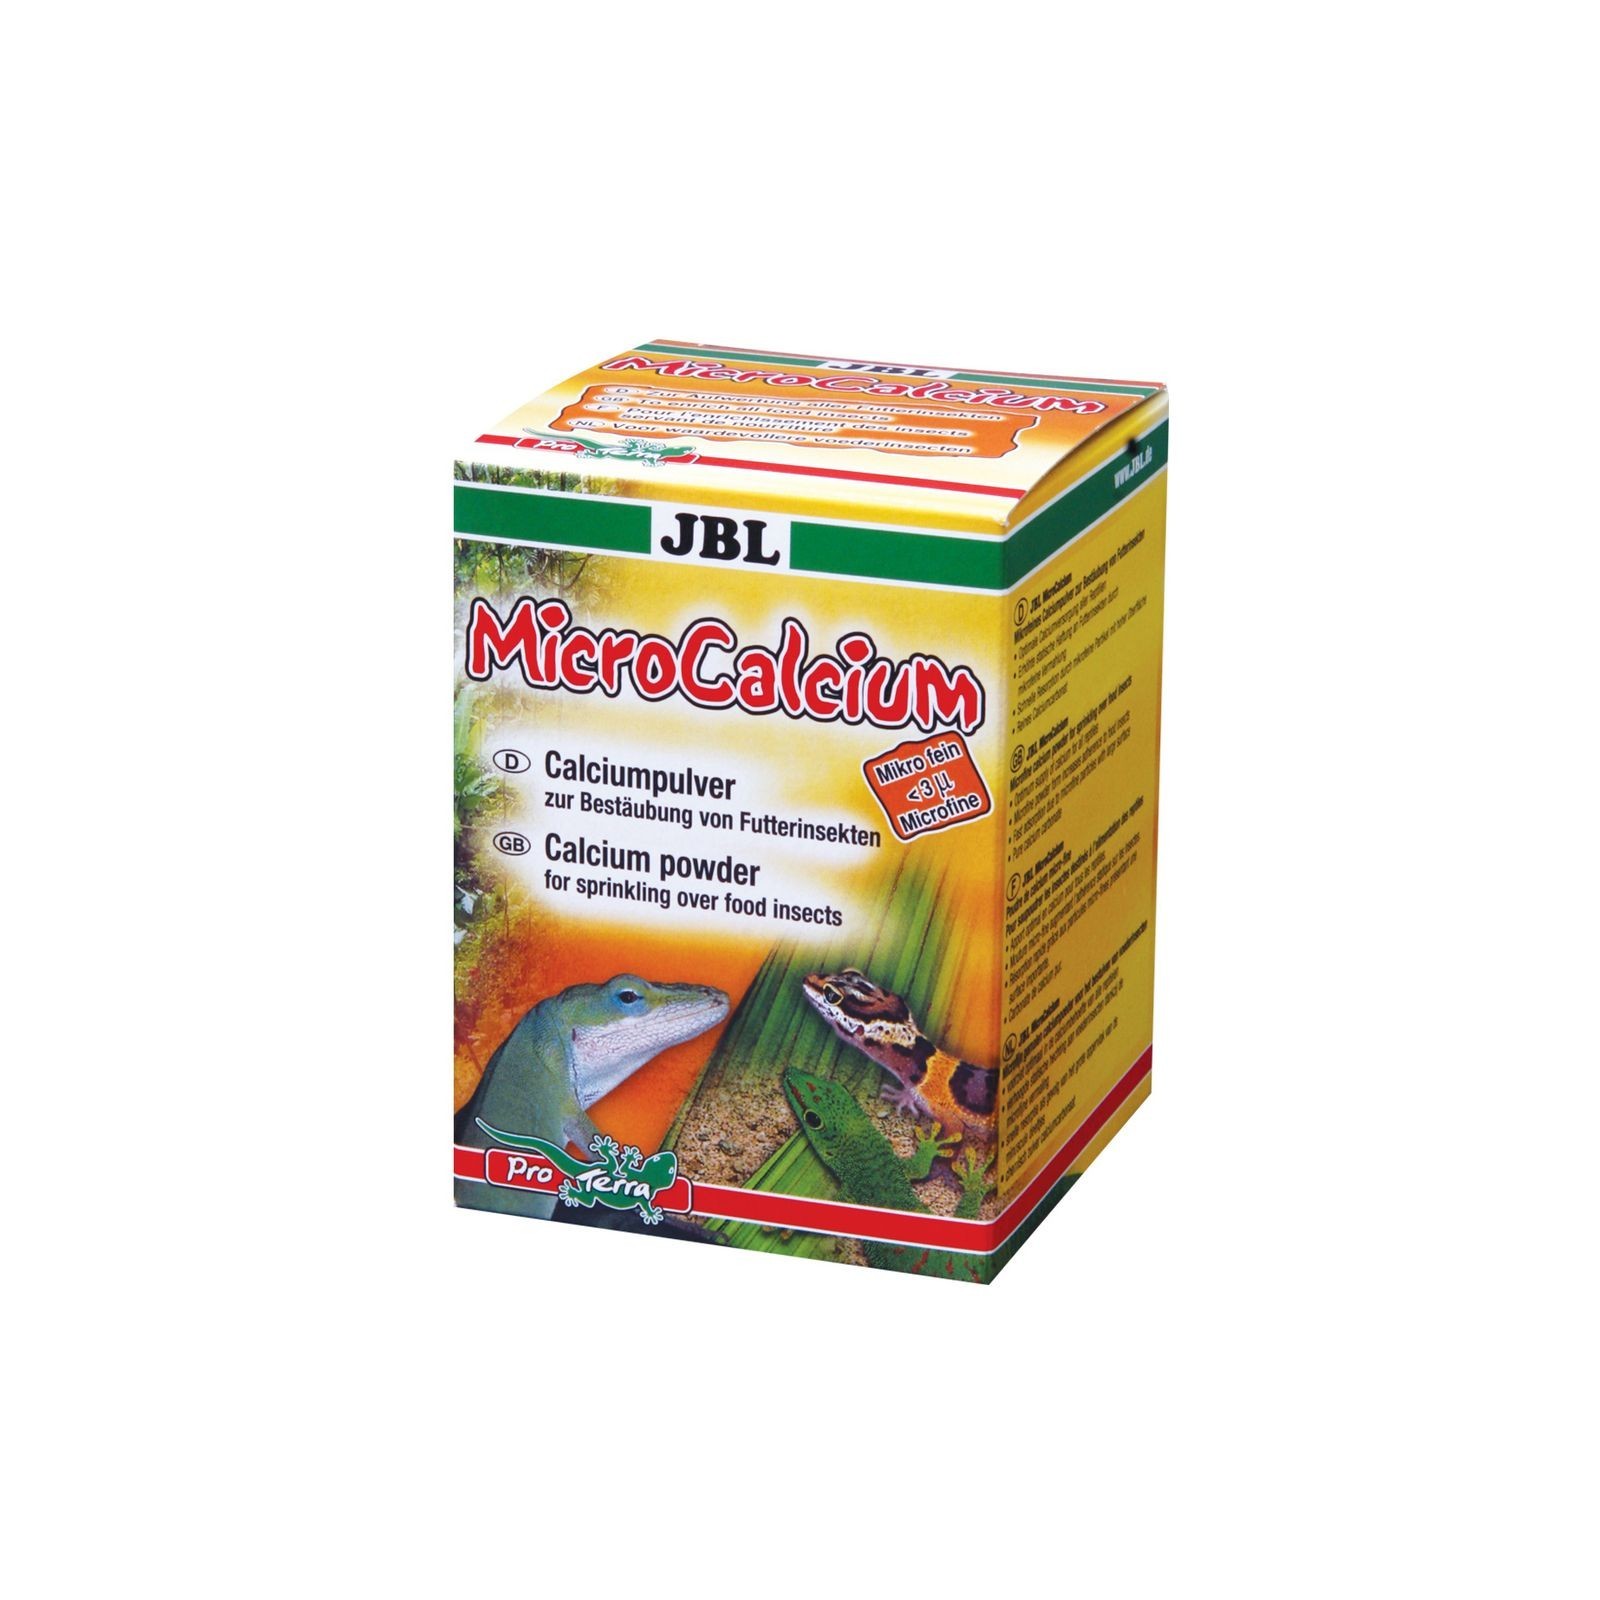 JBL MicroCalcium 100g Polvere di calcio per spolverare insetti alimentari